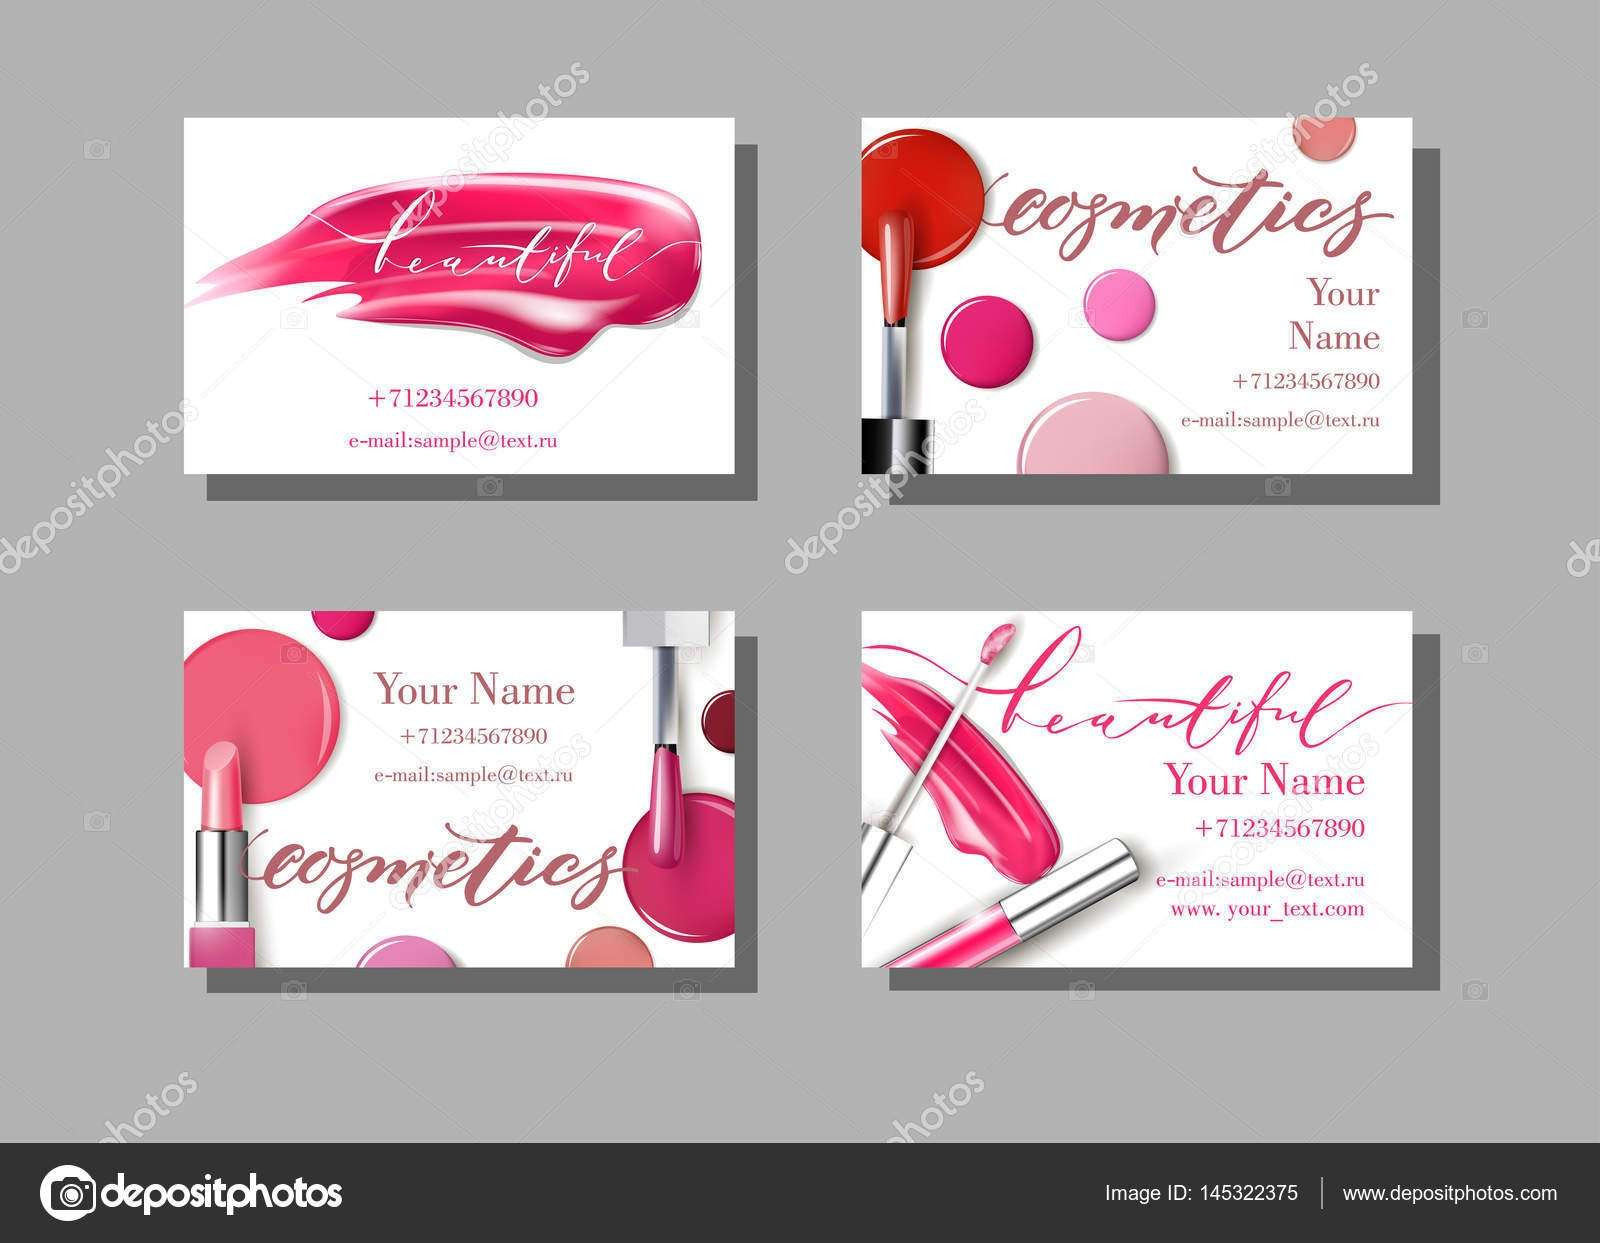 Makeup Artist Business Card Template Caquetapositivo Of Makeup Artist Business Cards Templates Free